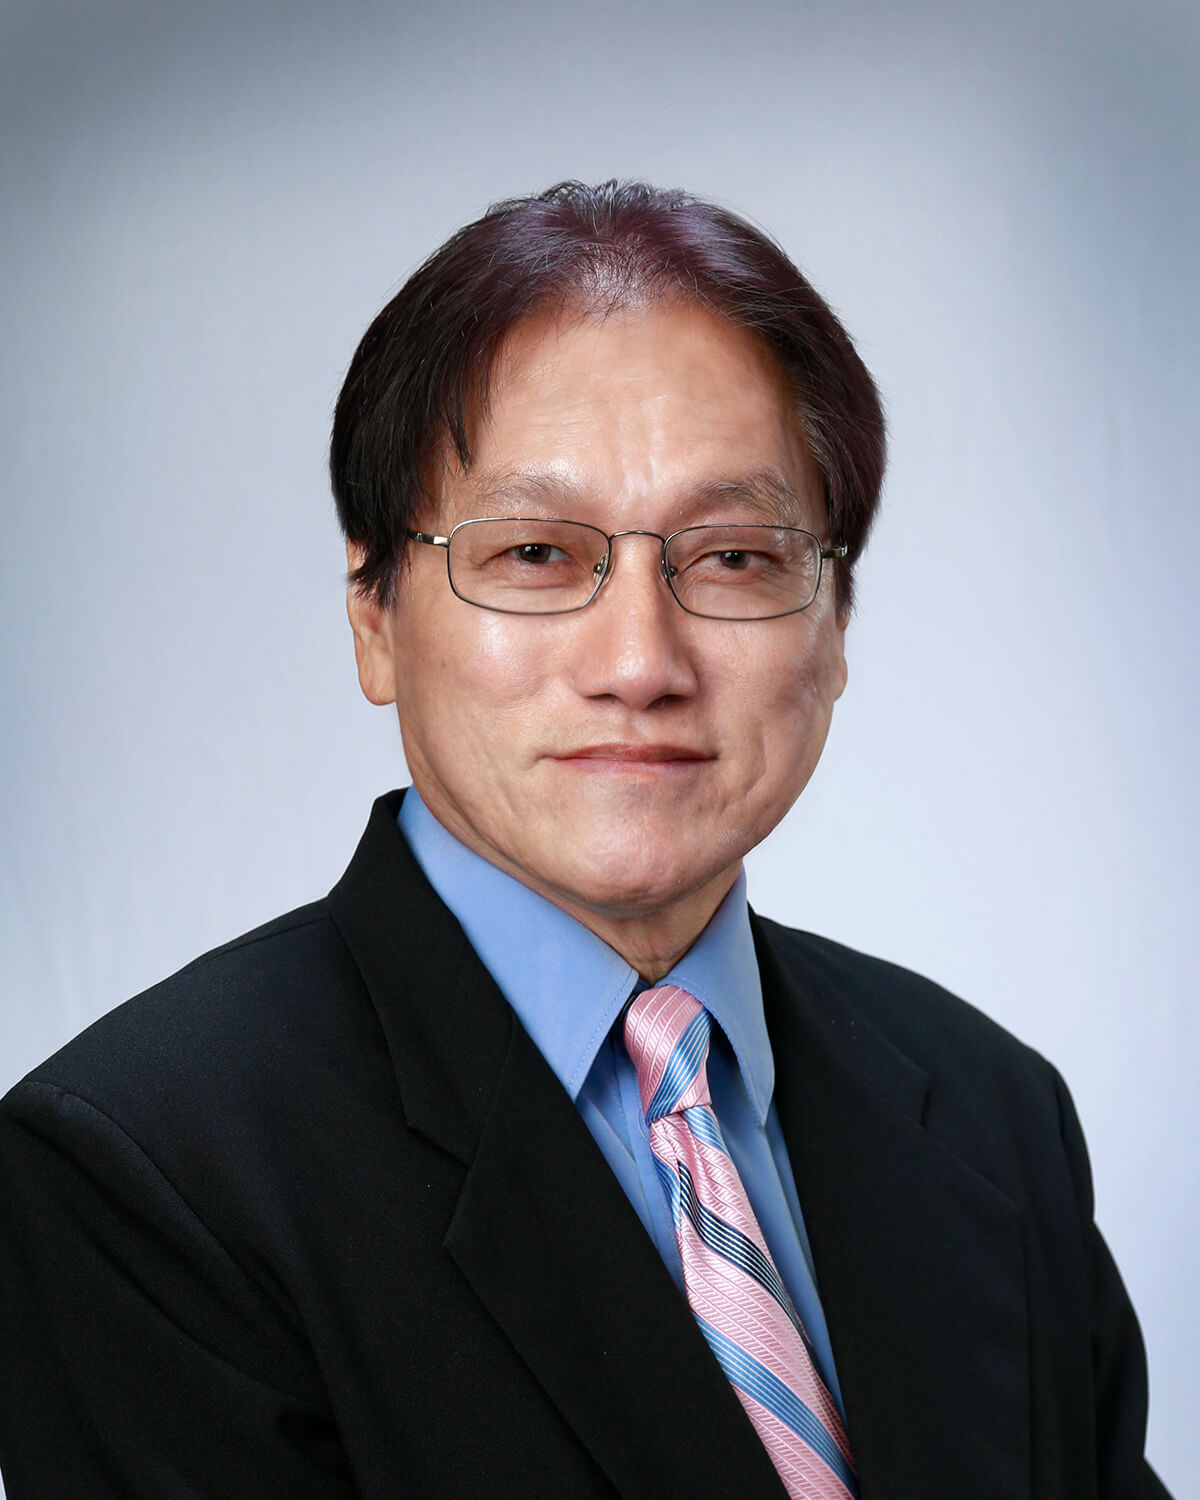 Dr. Miguel N. Tan